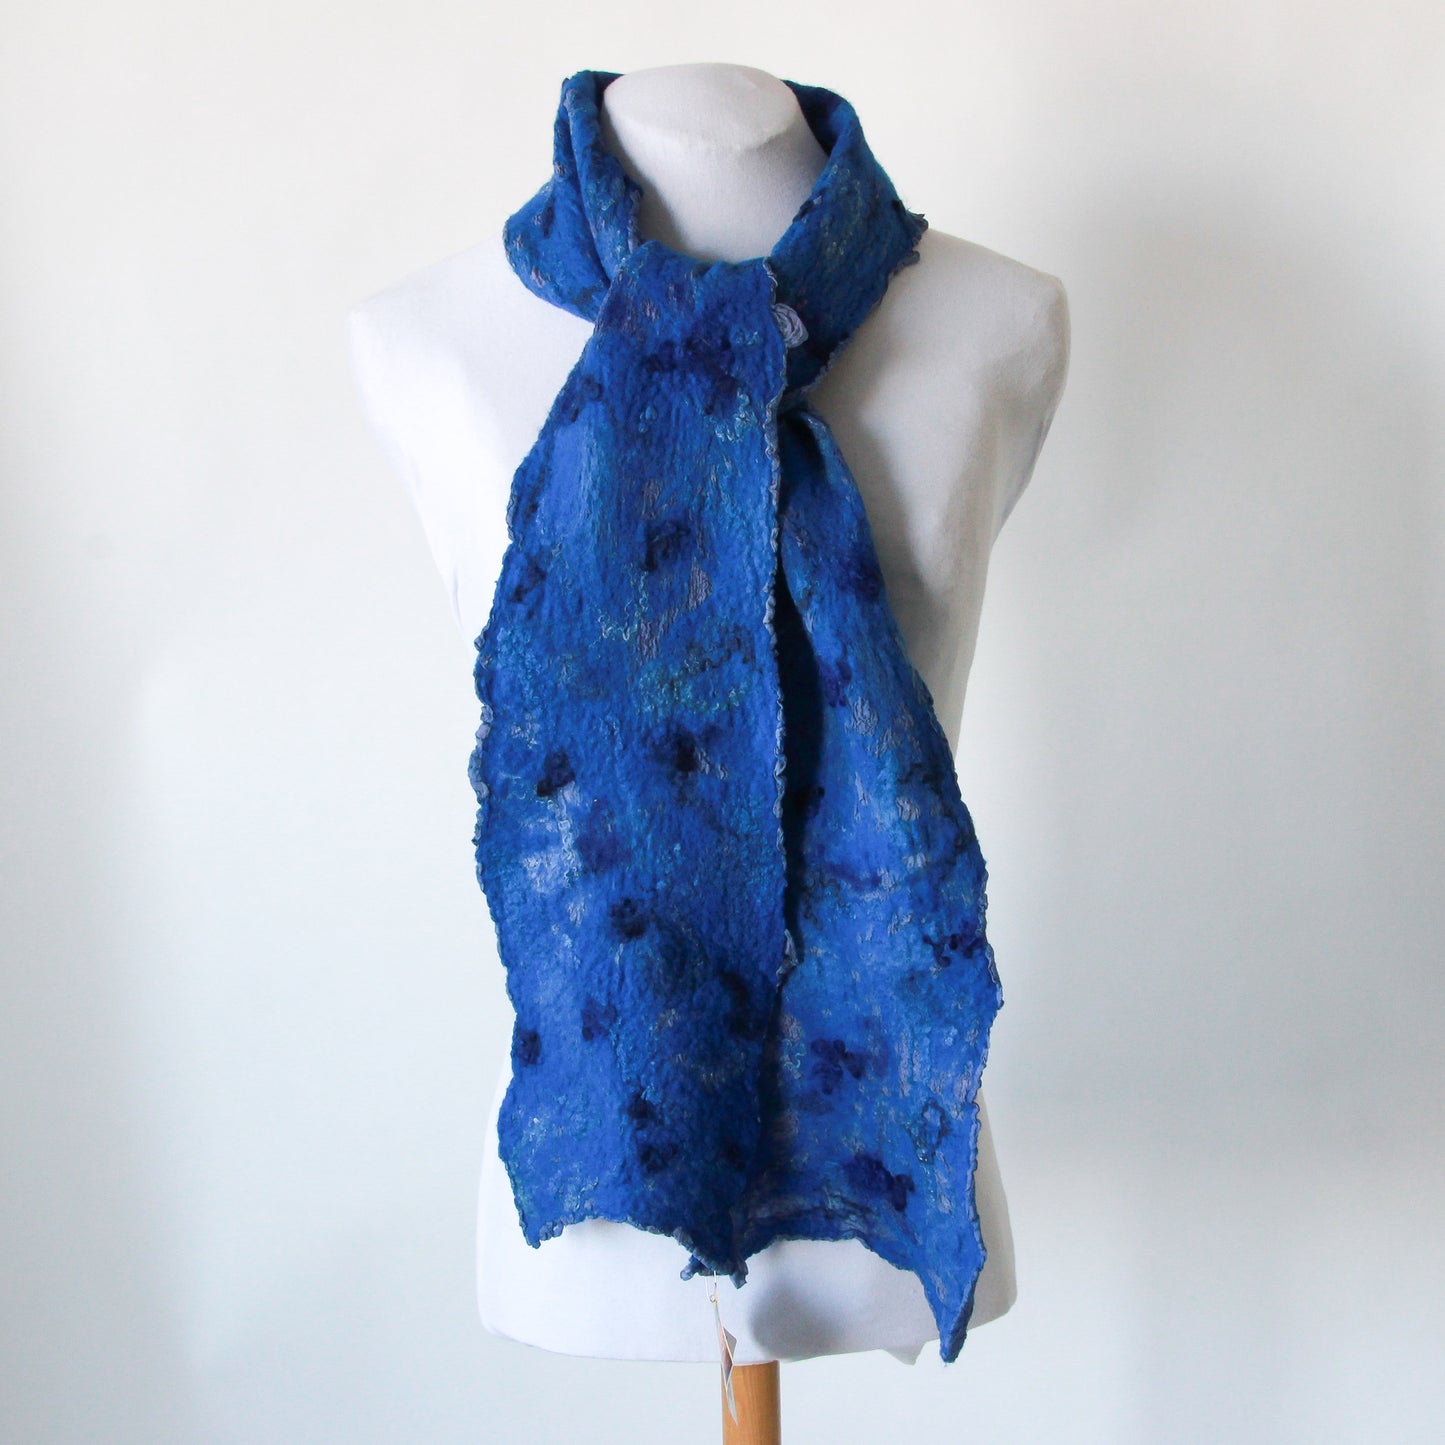 Blue nuno felted scarf